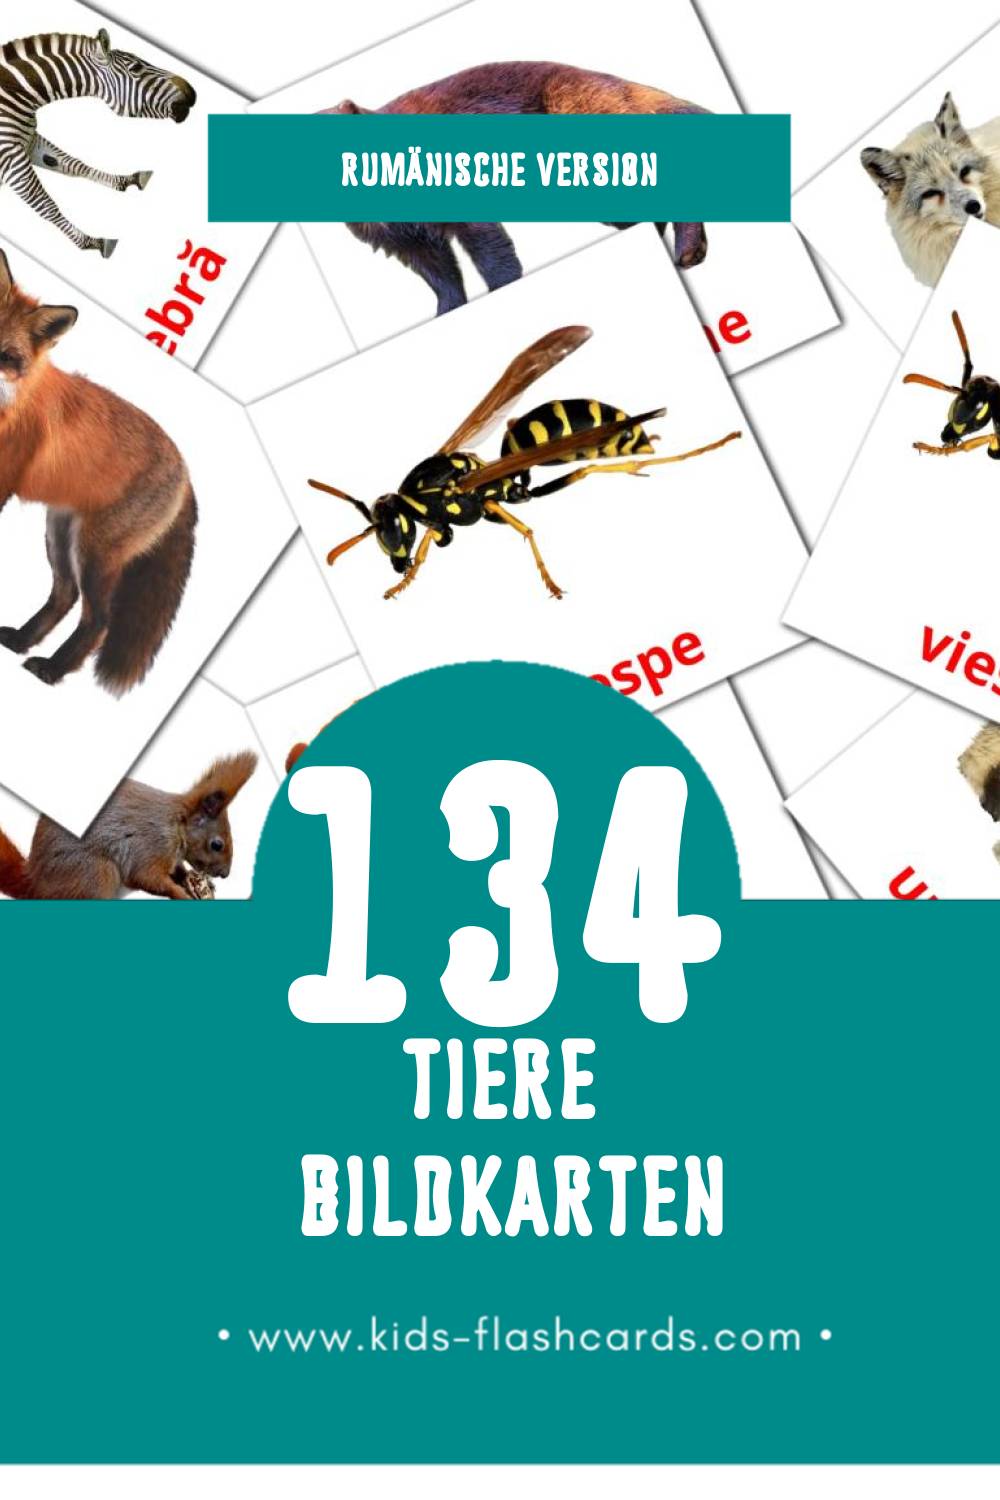 Visual Animale Flashcards für Kleinkinder (134 Karten in Rumänisch)